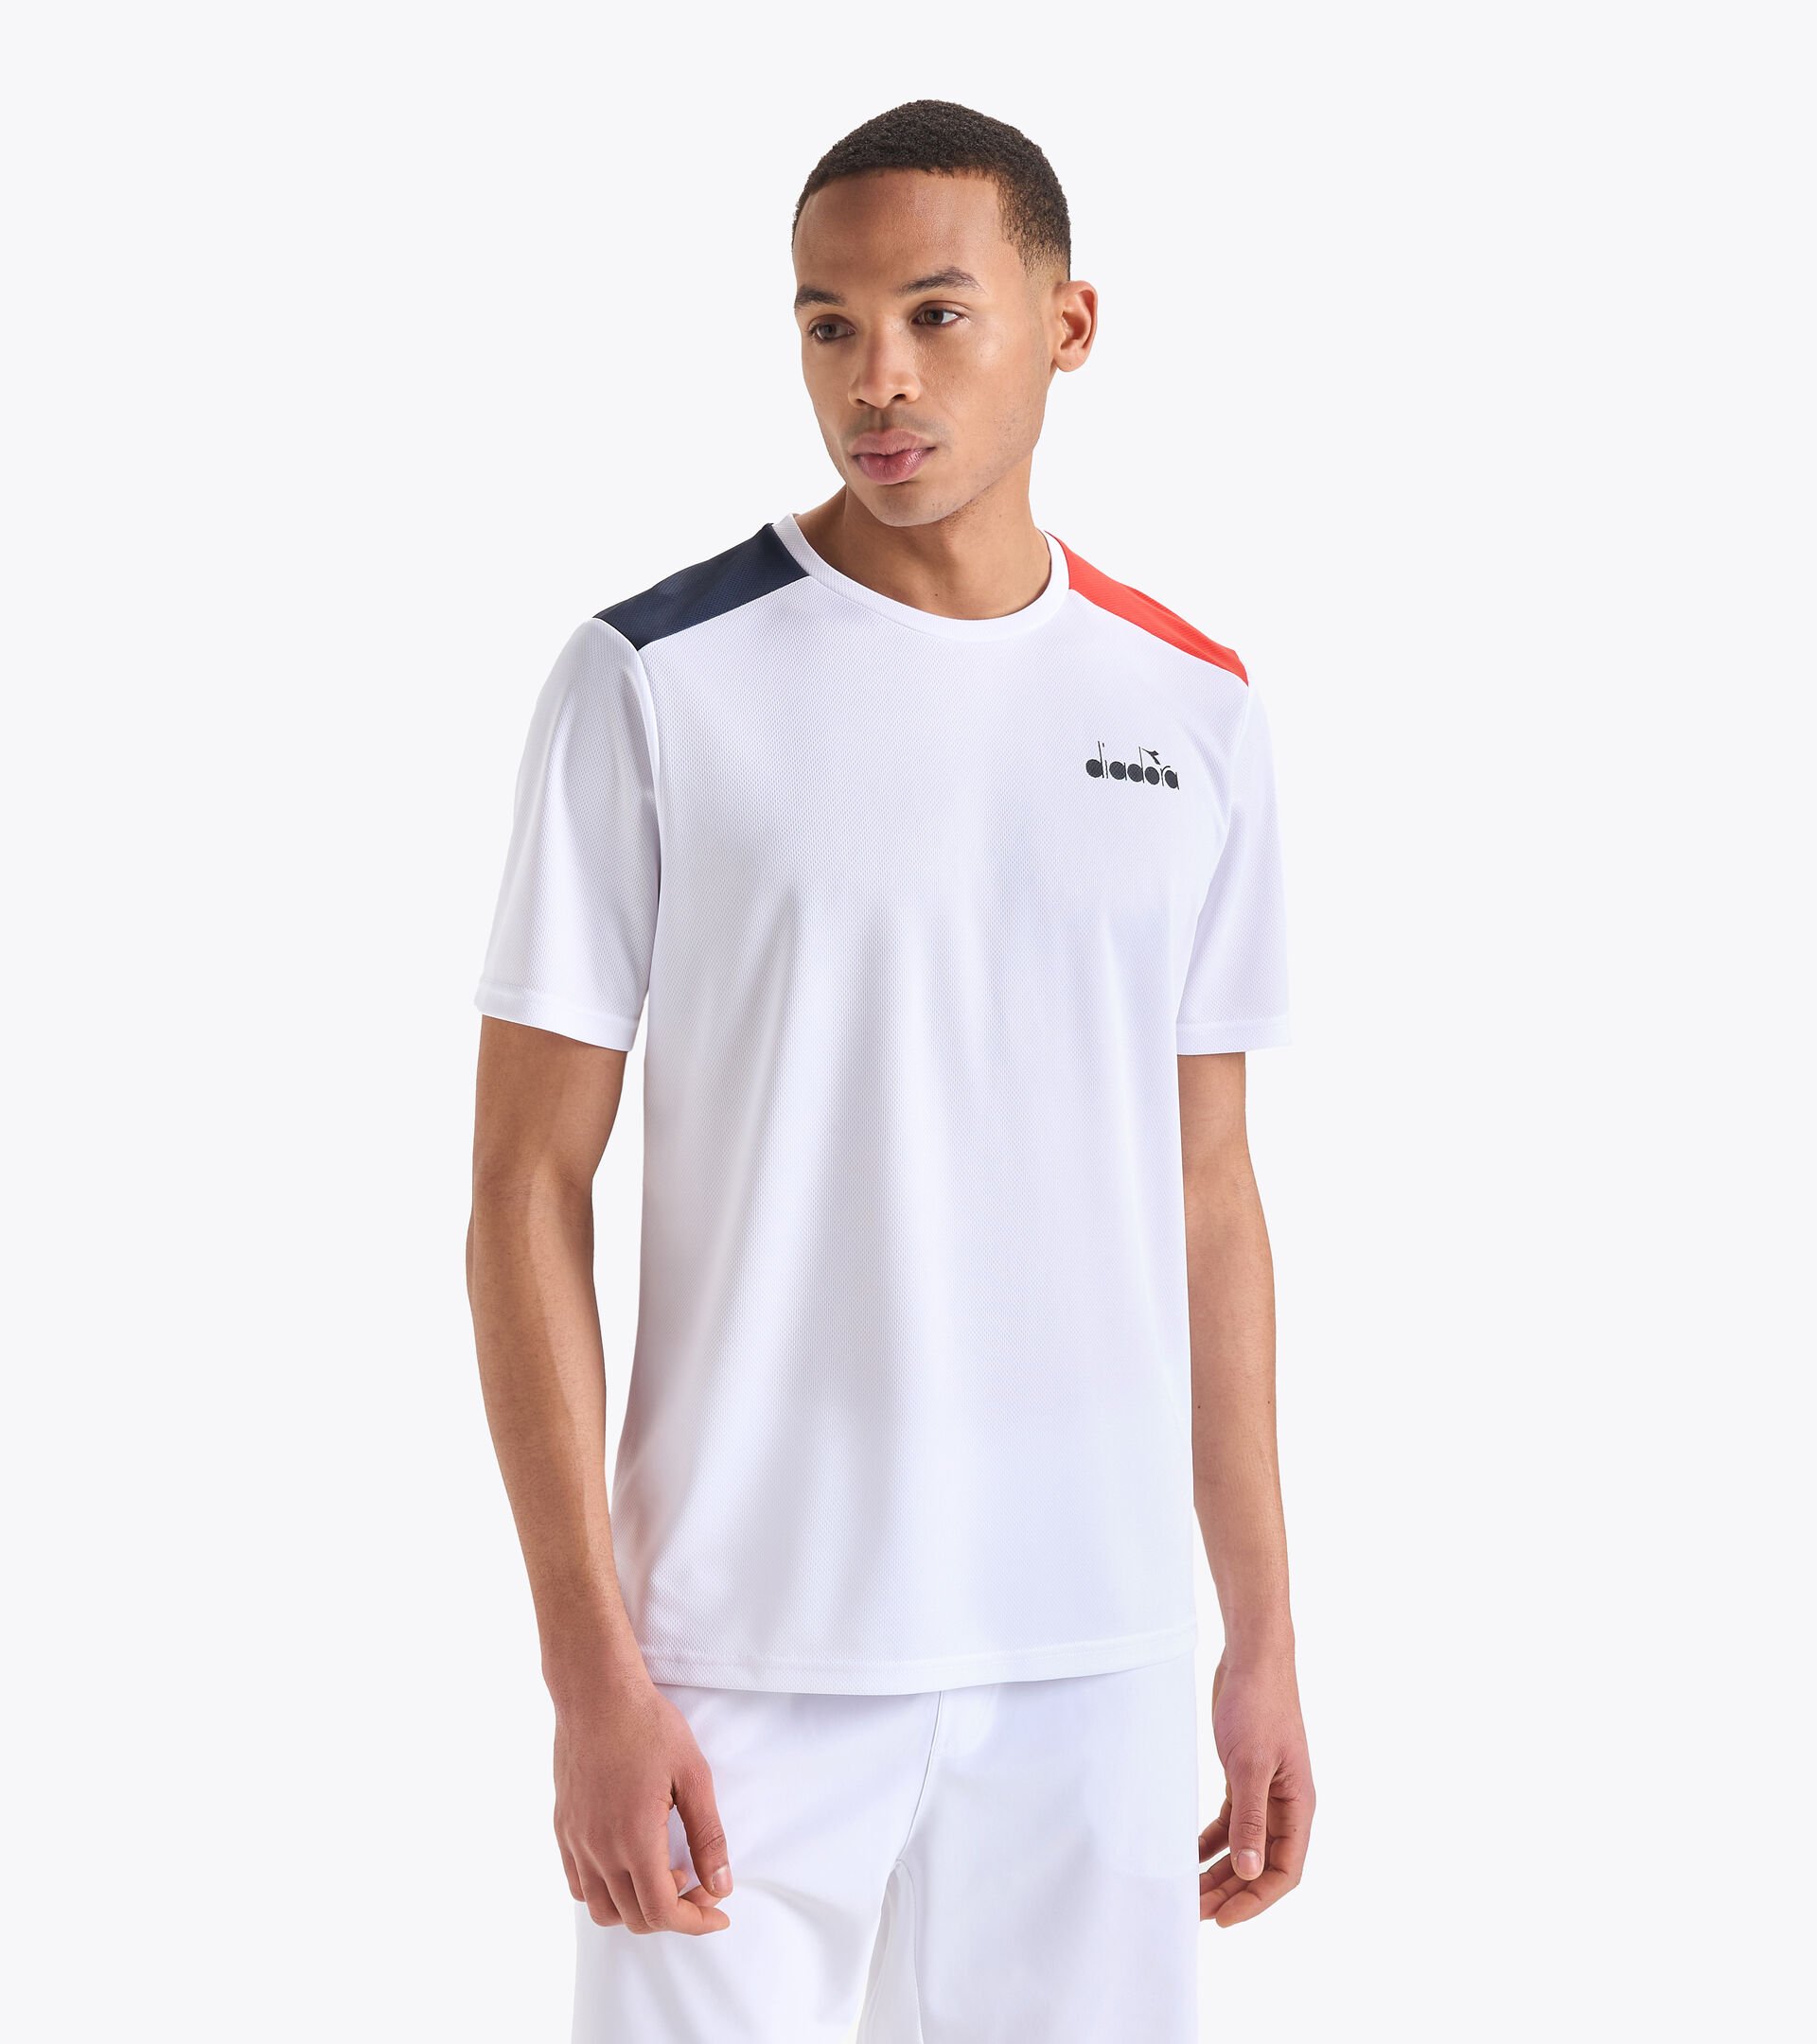 SS CORE T-SHIRT T Tennis Store - - Diadora Men shirt Online